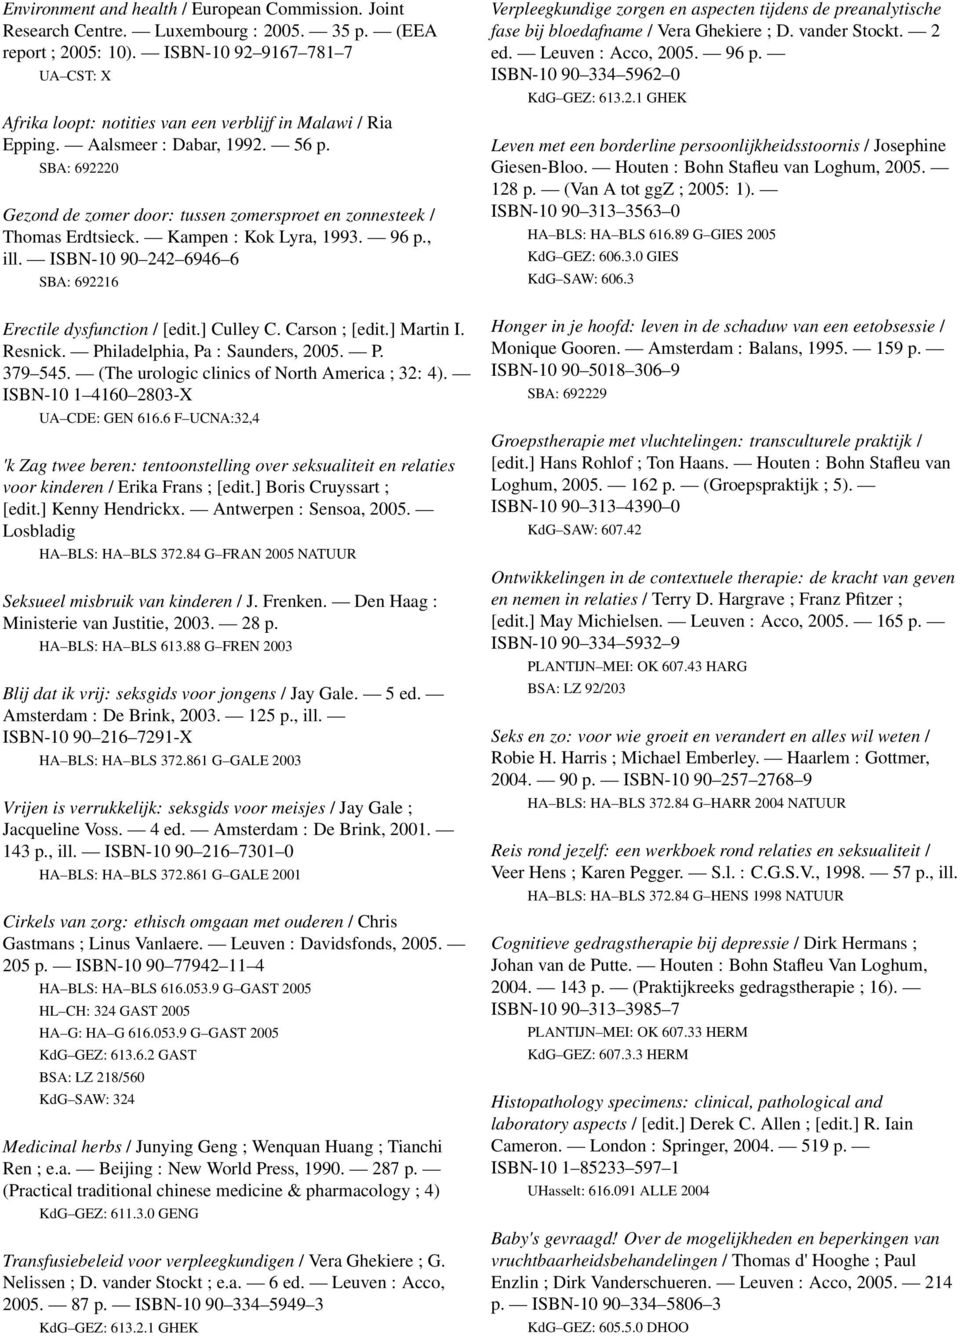 SBA: 692220 Gezond de zomer door: tussen zomersproet en zonnesteek / Thomas Erdtsieck. Kampen : Kok Lyra, 1993. 96 p., ill. ISBN-10 90 242 6946 6 SBA: 692216 Erectile dysfunction / [edit.] Culley C.